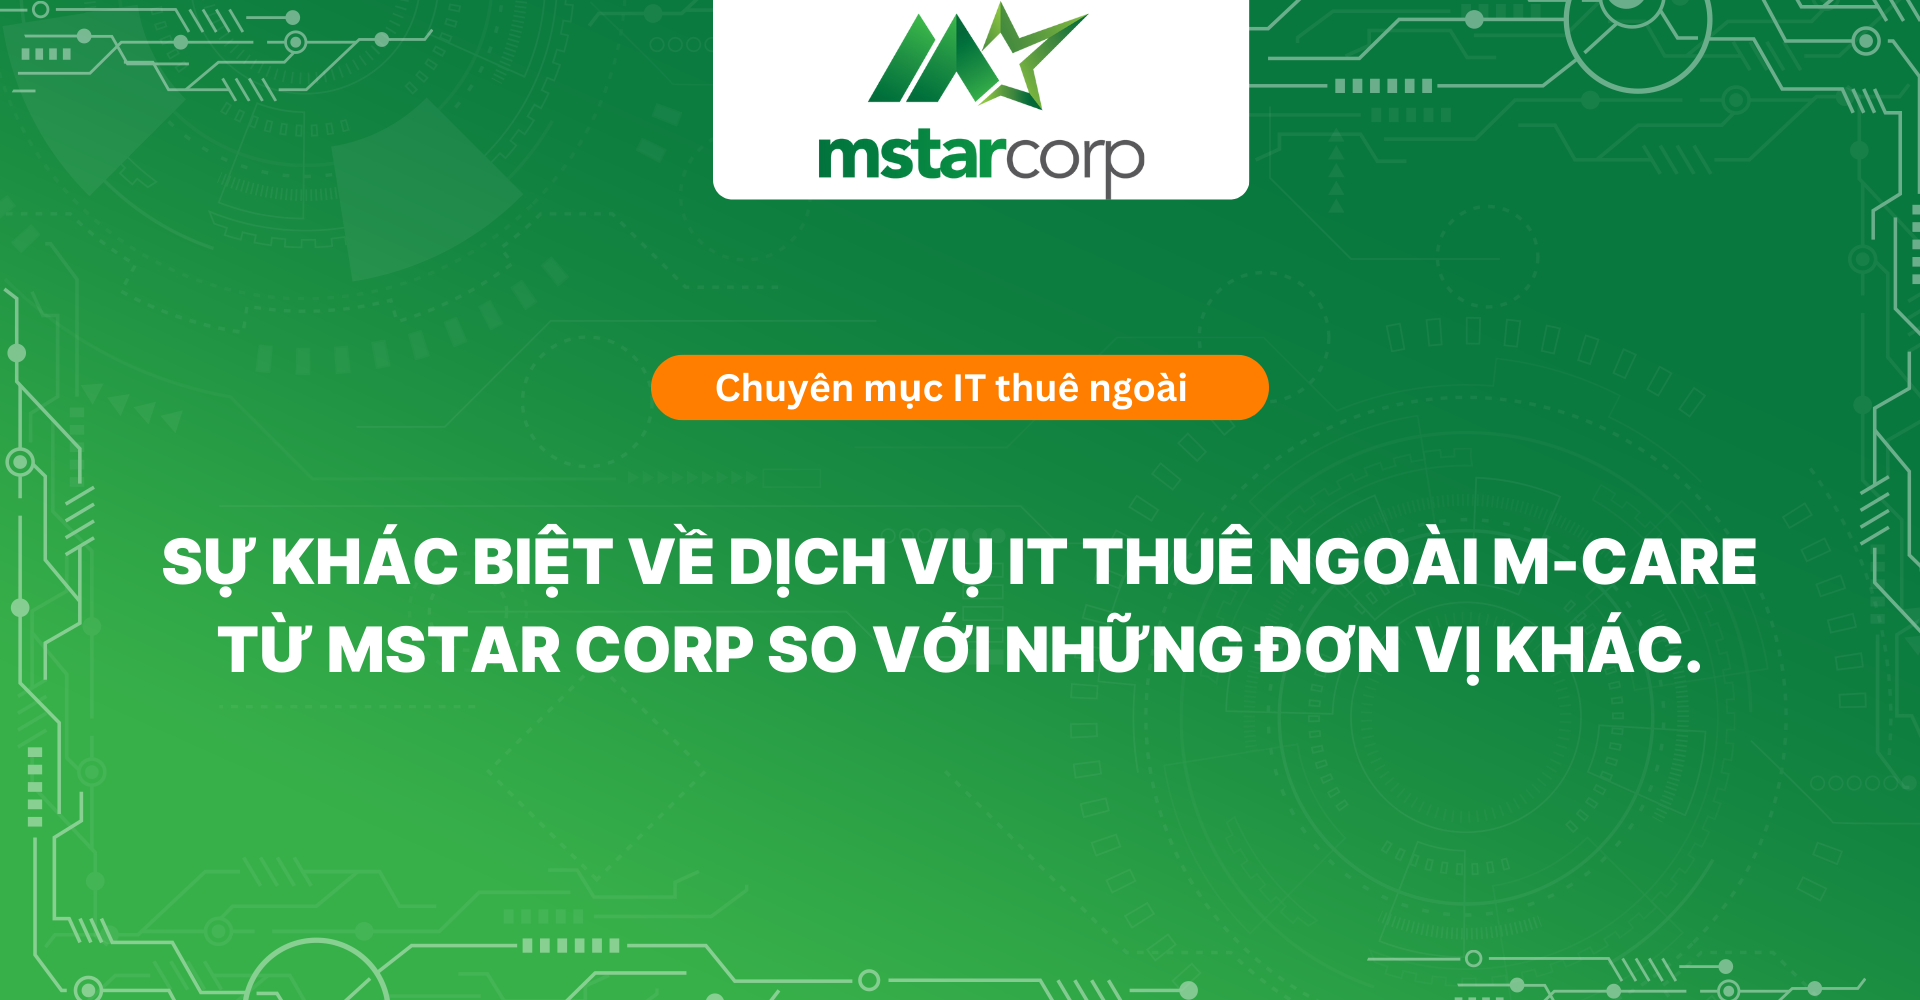 Sự khác biệt về dịch vụ IT thuê ngoài M-Care từ Mstar Corp so với những đơn vị khác.